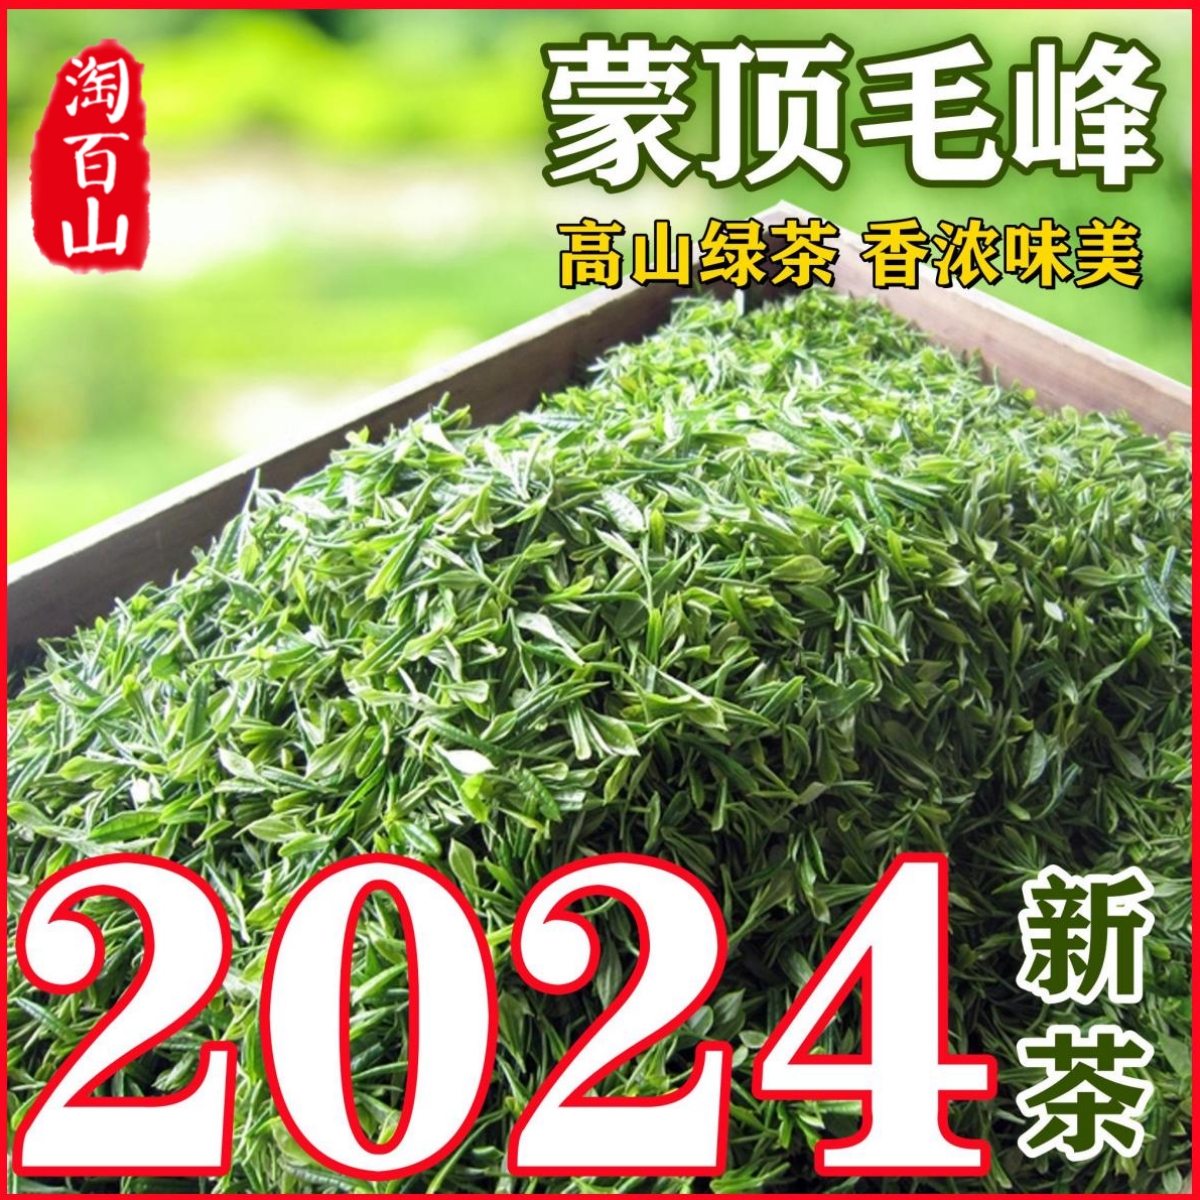 2024年新春茶 蒙顶毛峰绿茶 四川蒙顶山茶 高山绿茶散装500g